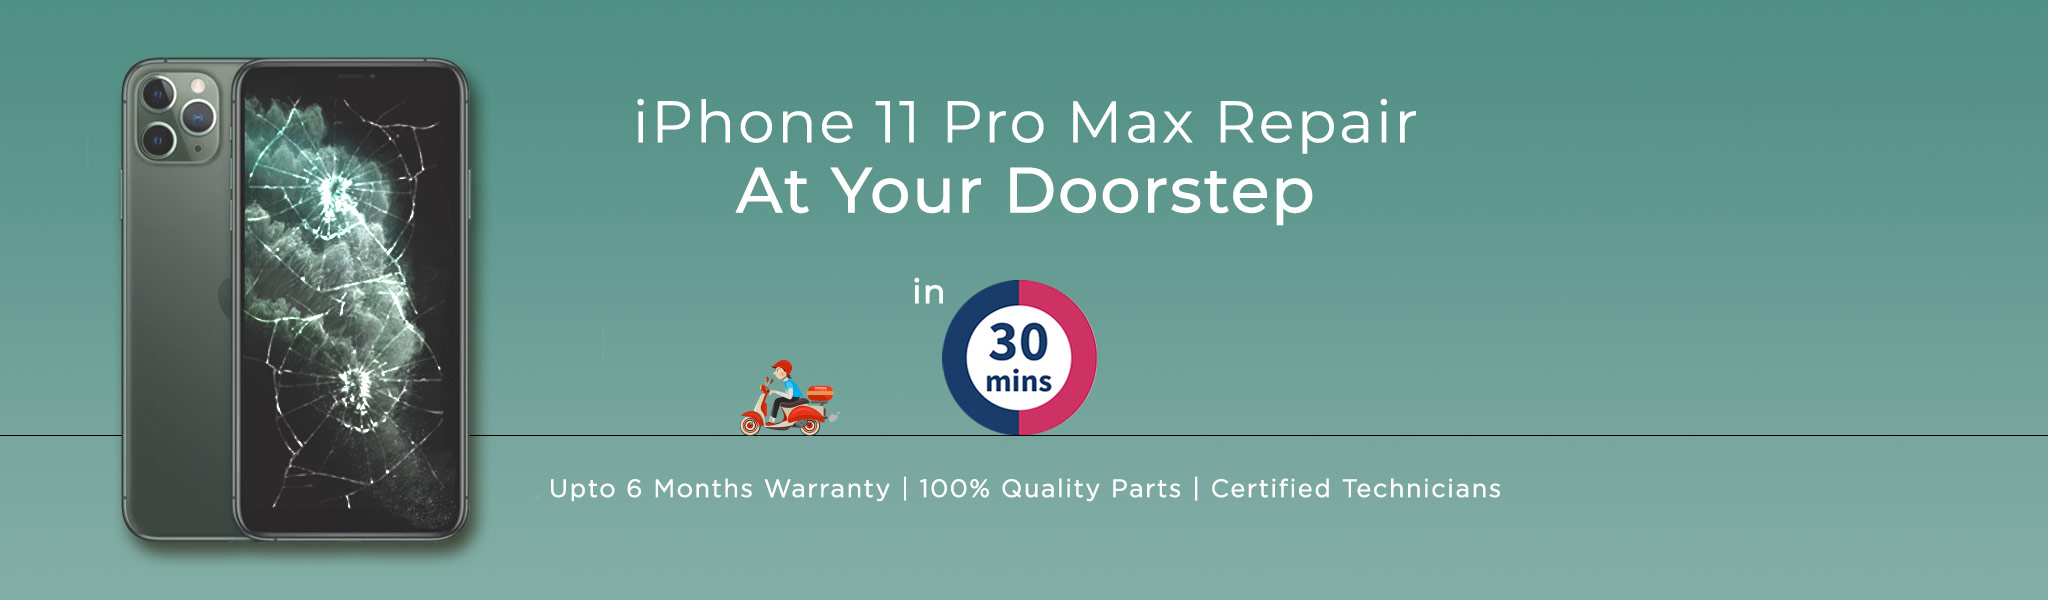 iPhone-11-Pro-Max-repair.jpg